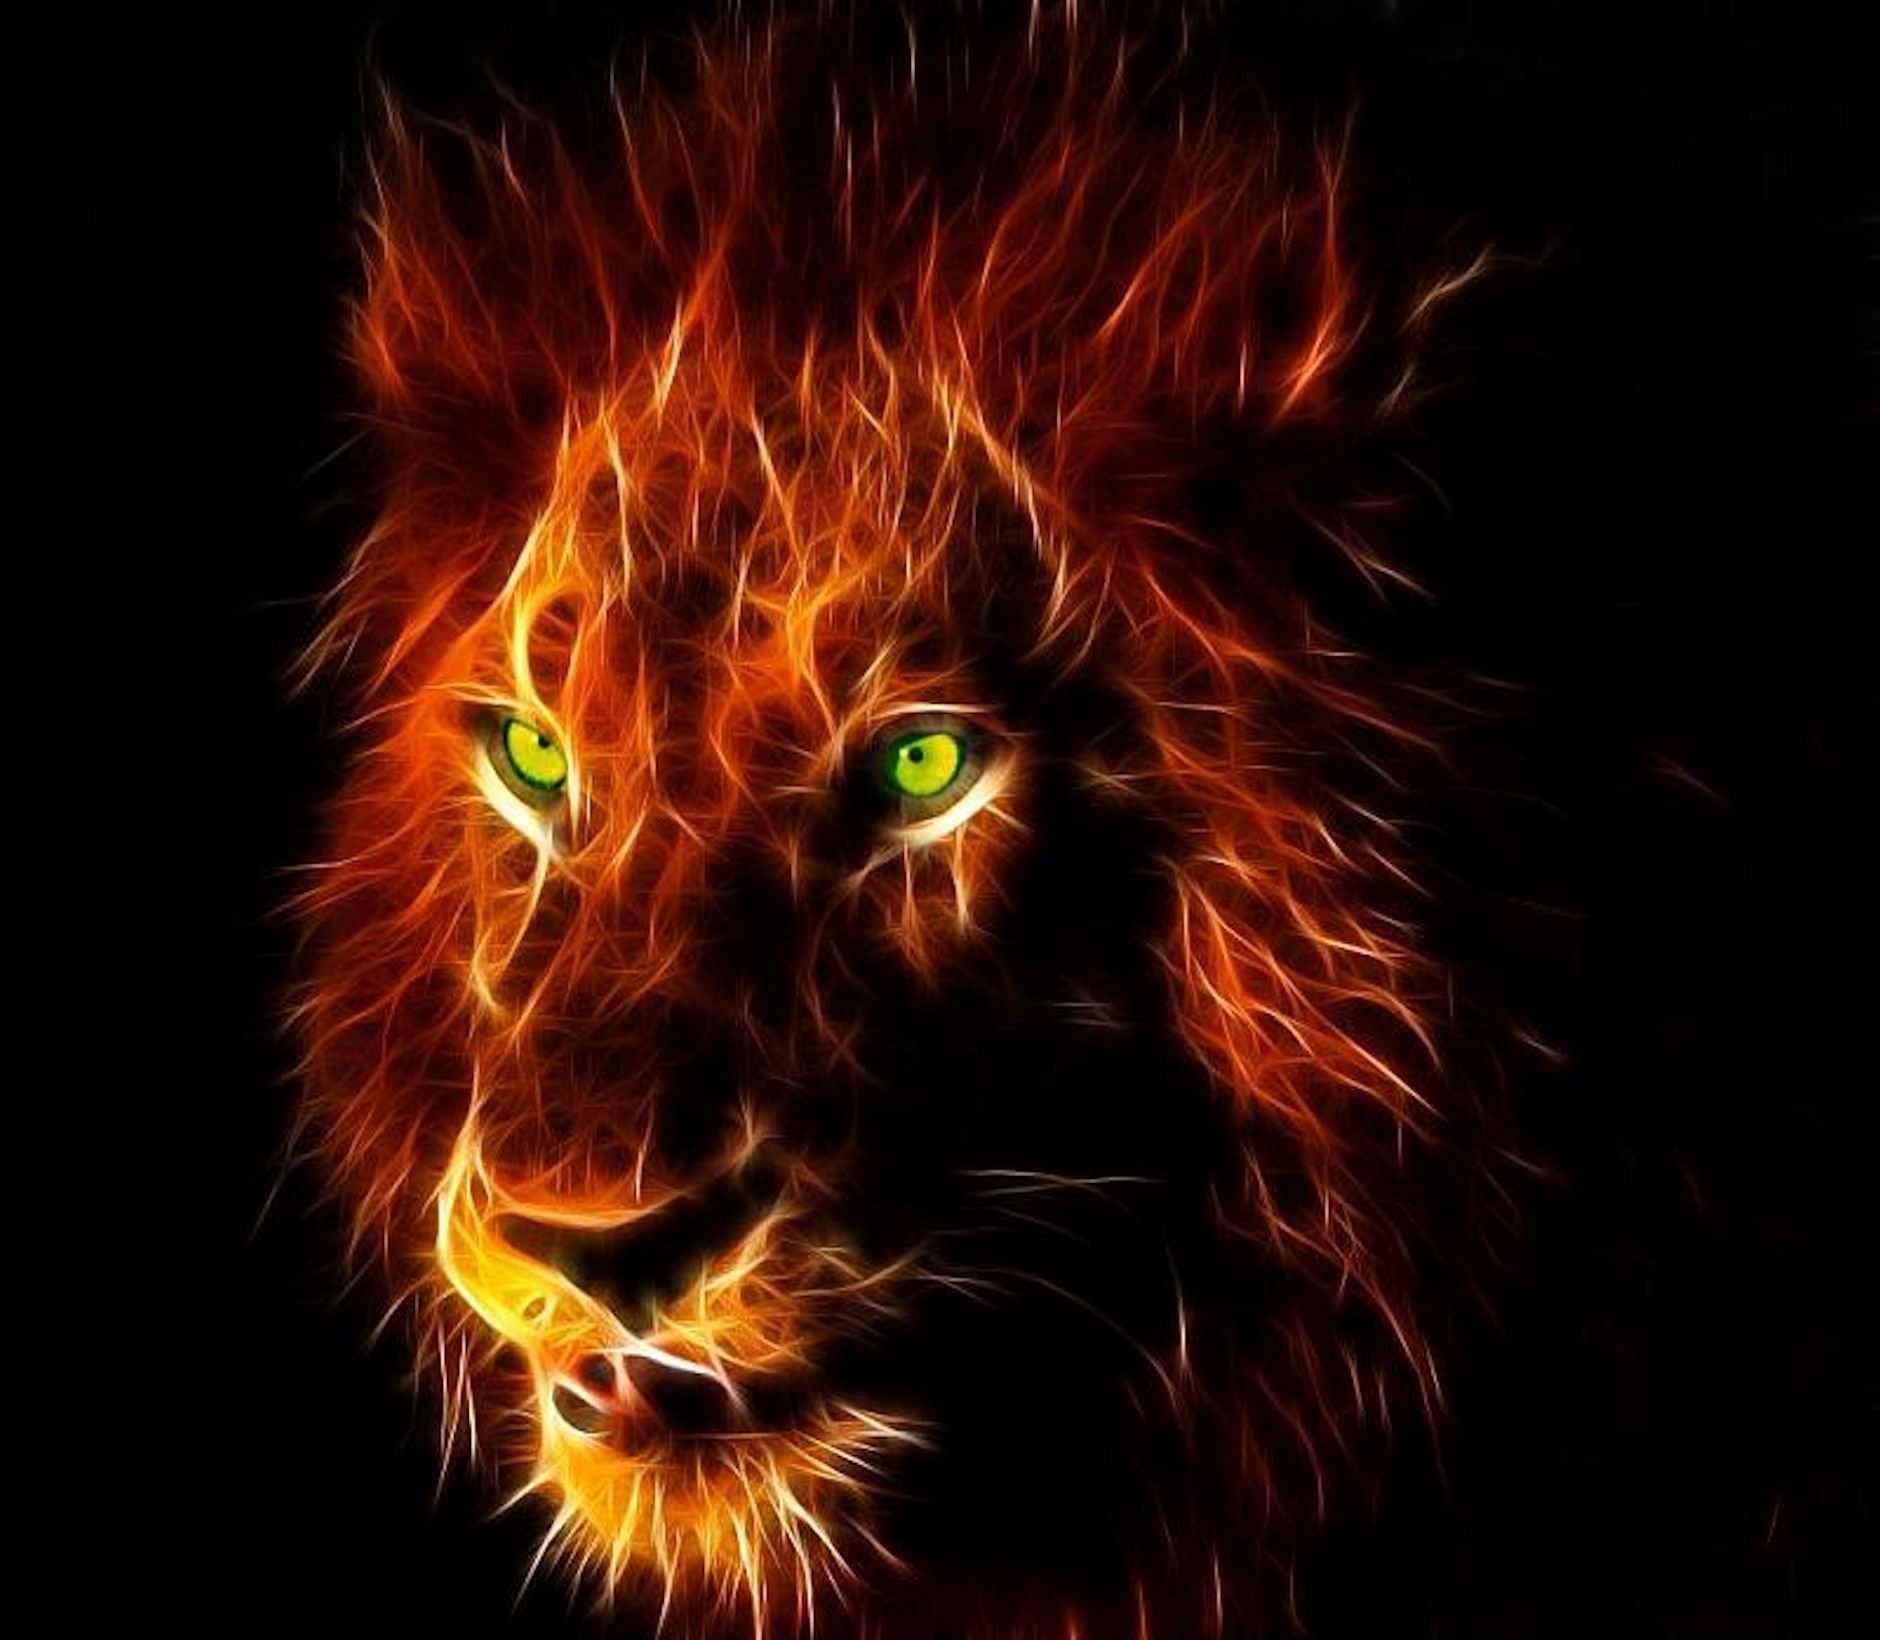 download lion dangerous images